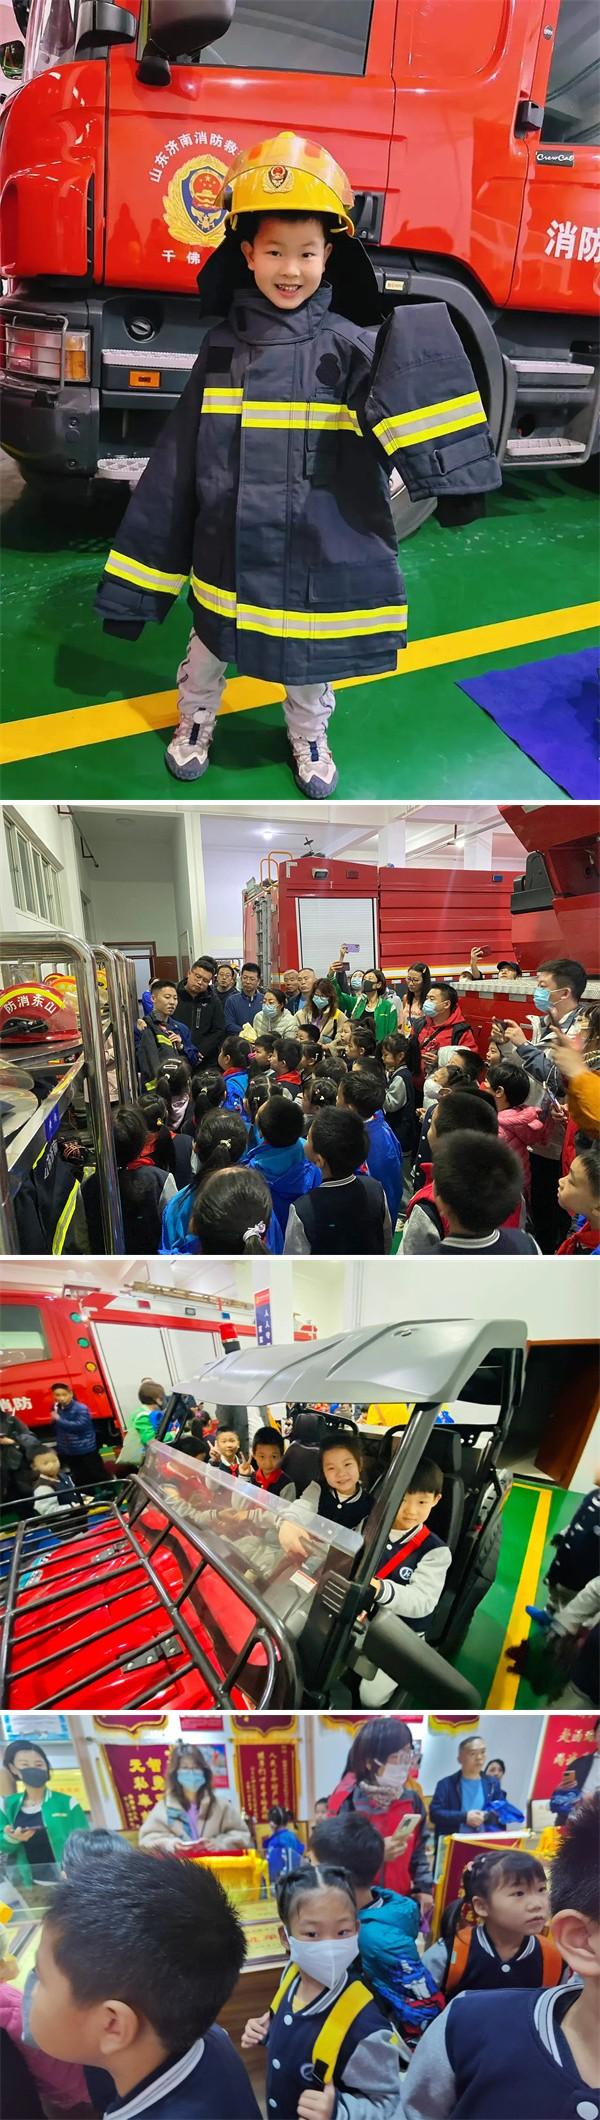 山东师范大学附属小学一年级七班师生消防宣传日活动成功举办